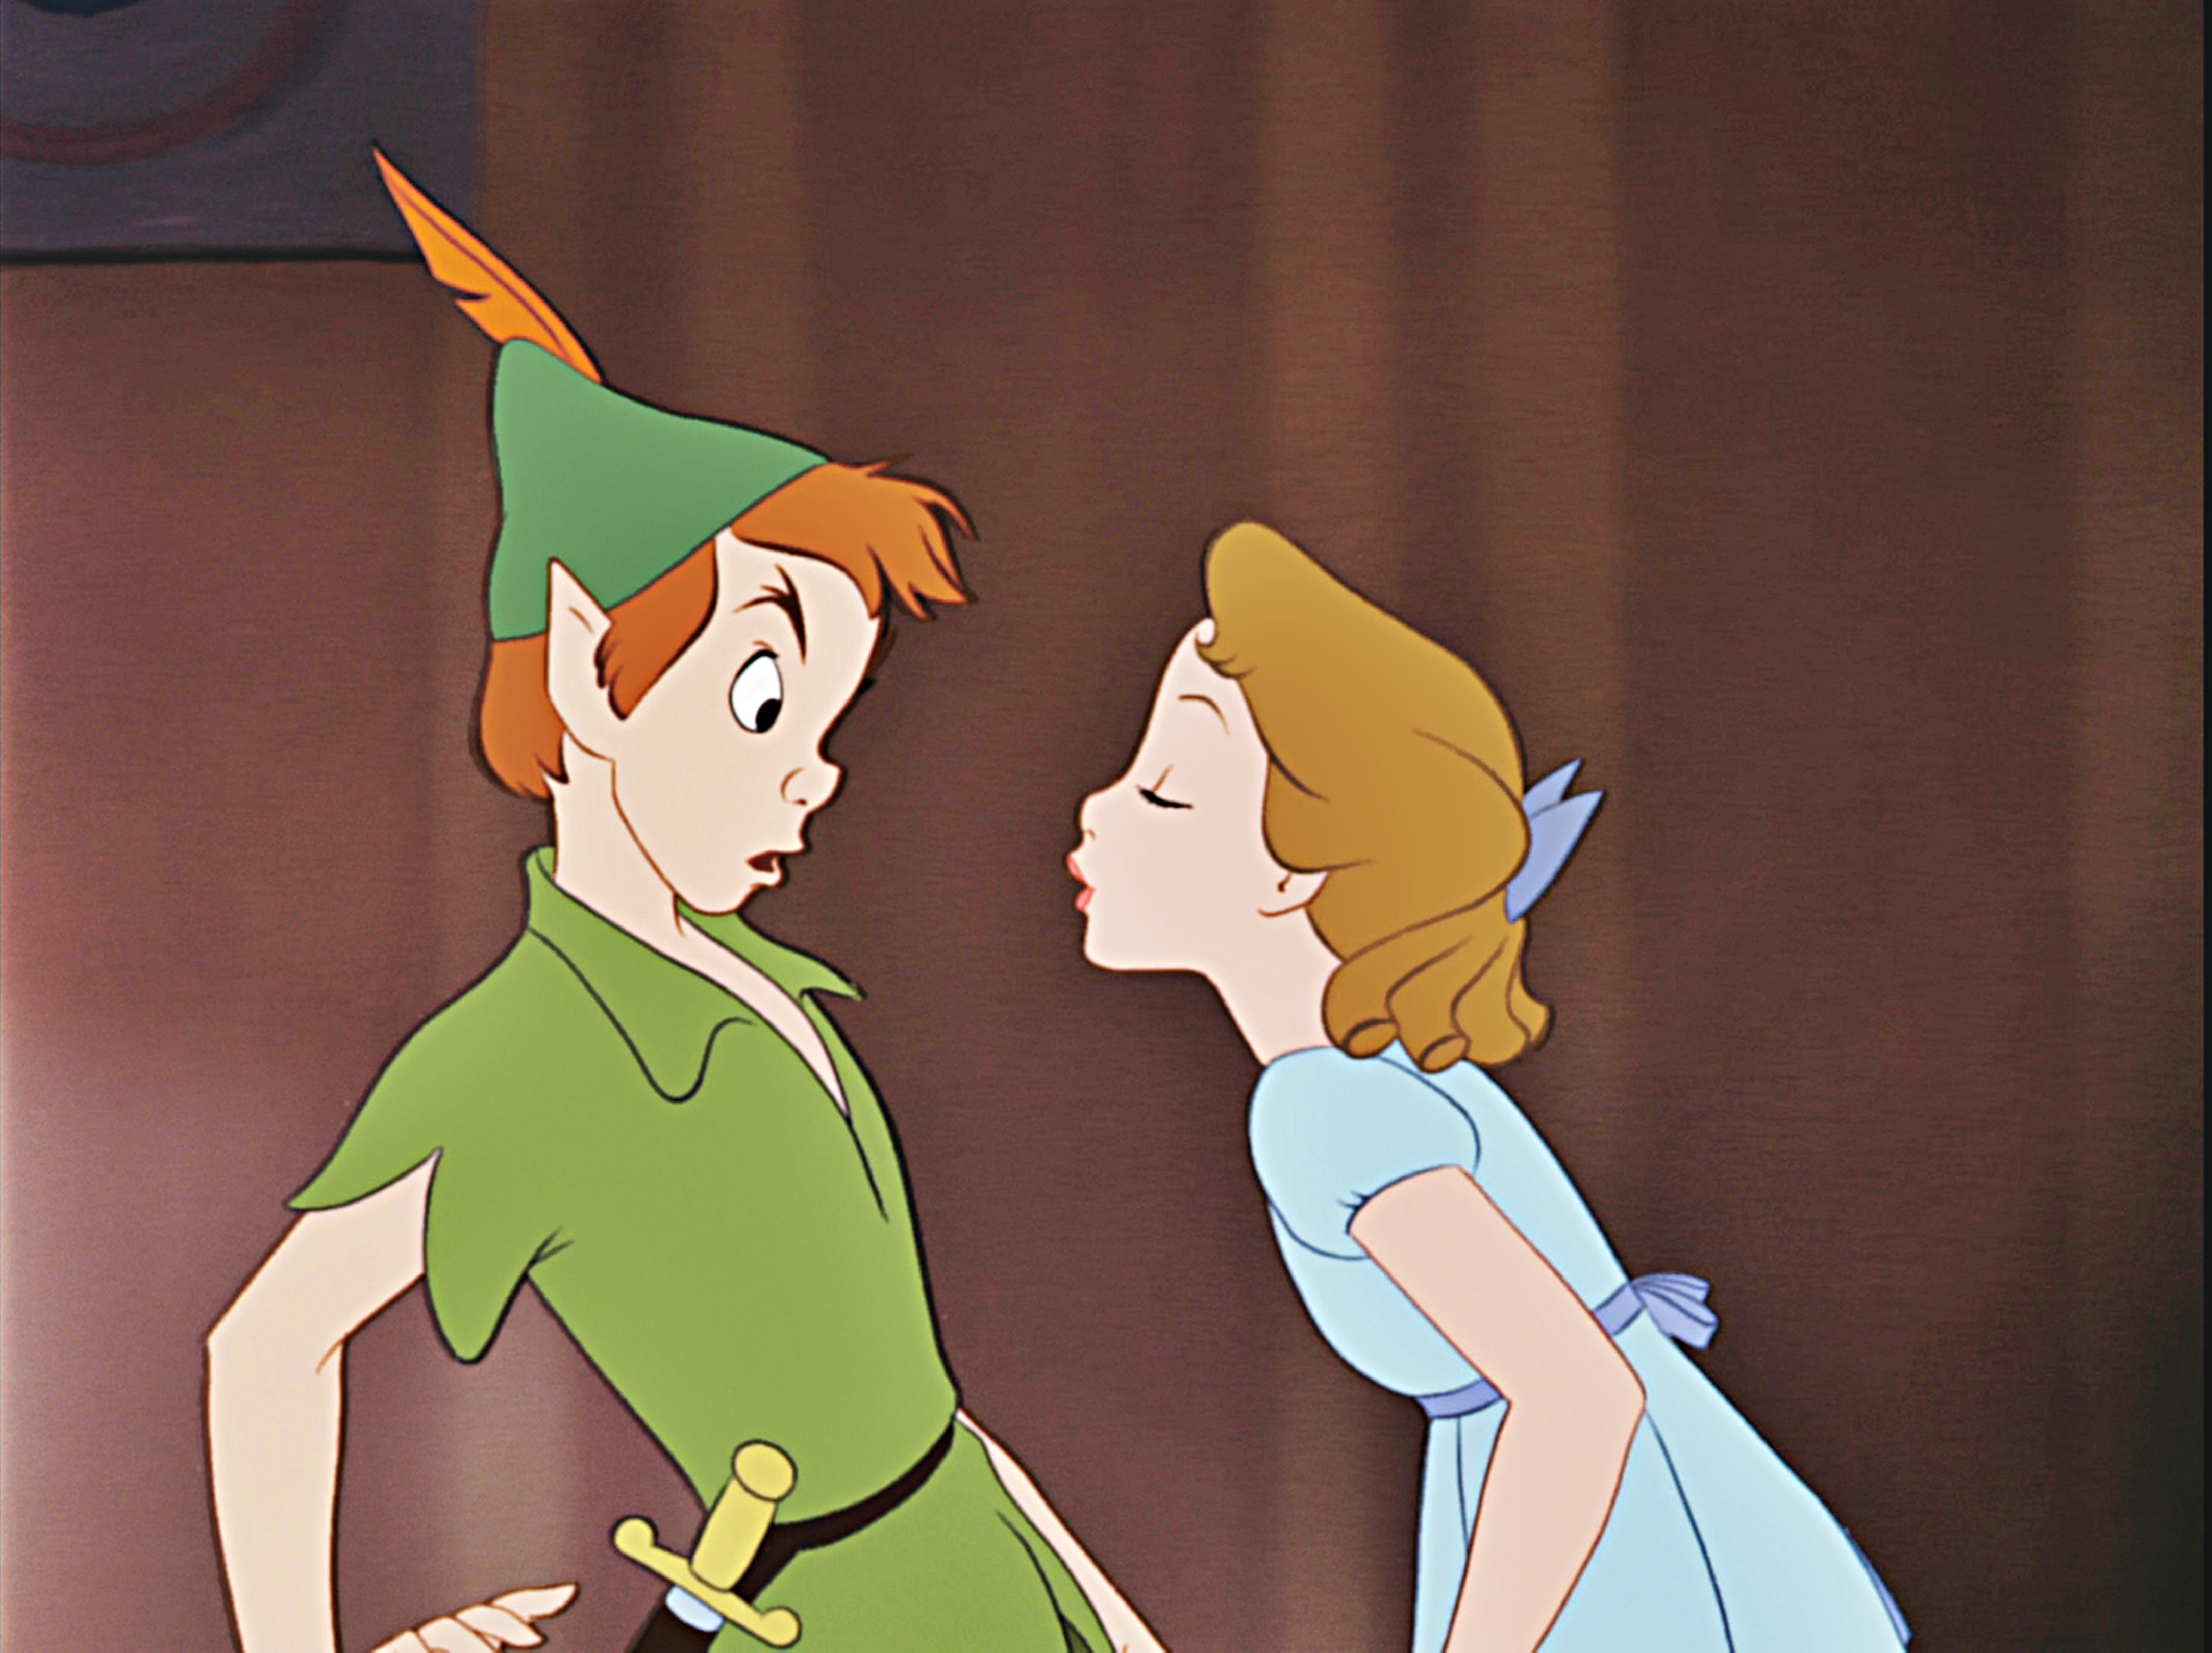 Walt-Disney-Screencaps-Peter-Pan-Wendy-Darling-walt-disney-characters-32891340-4335-3240.jpg